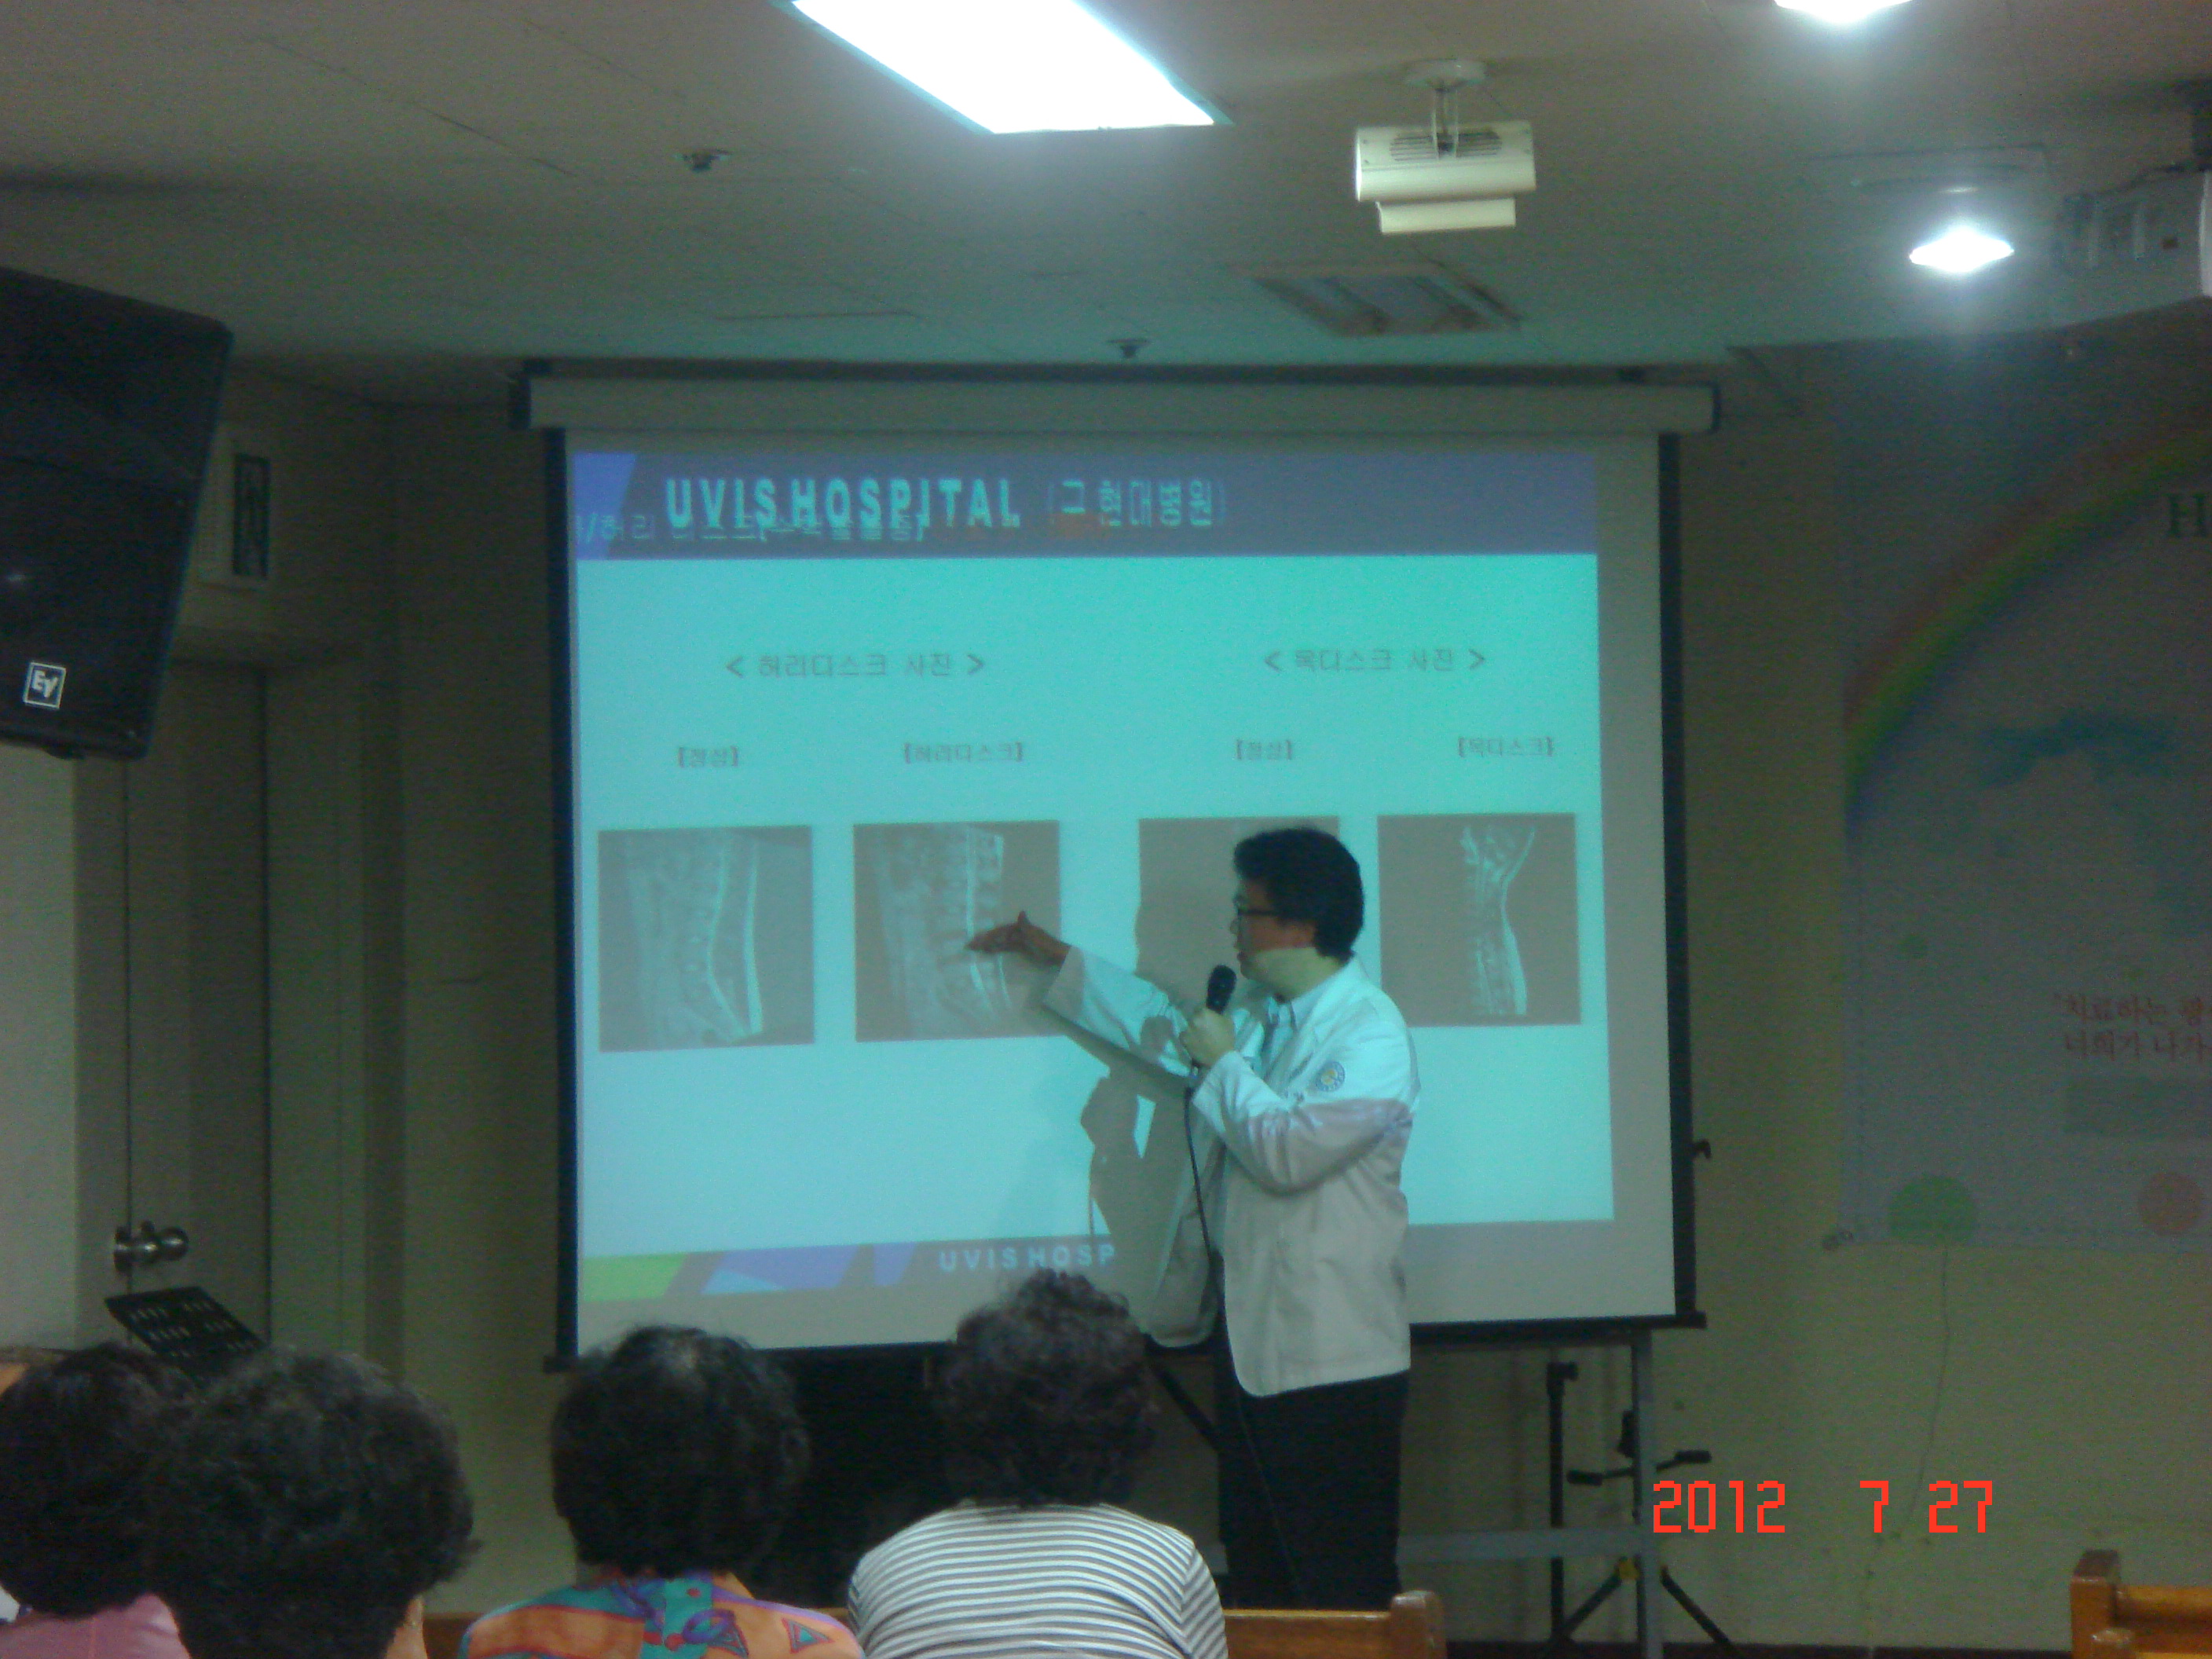 2012년 7월 27일 - 호산나교회 의료봉사 게시글의 3번째 첨부파일입니다.